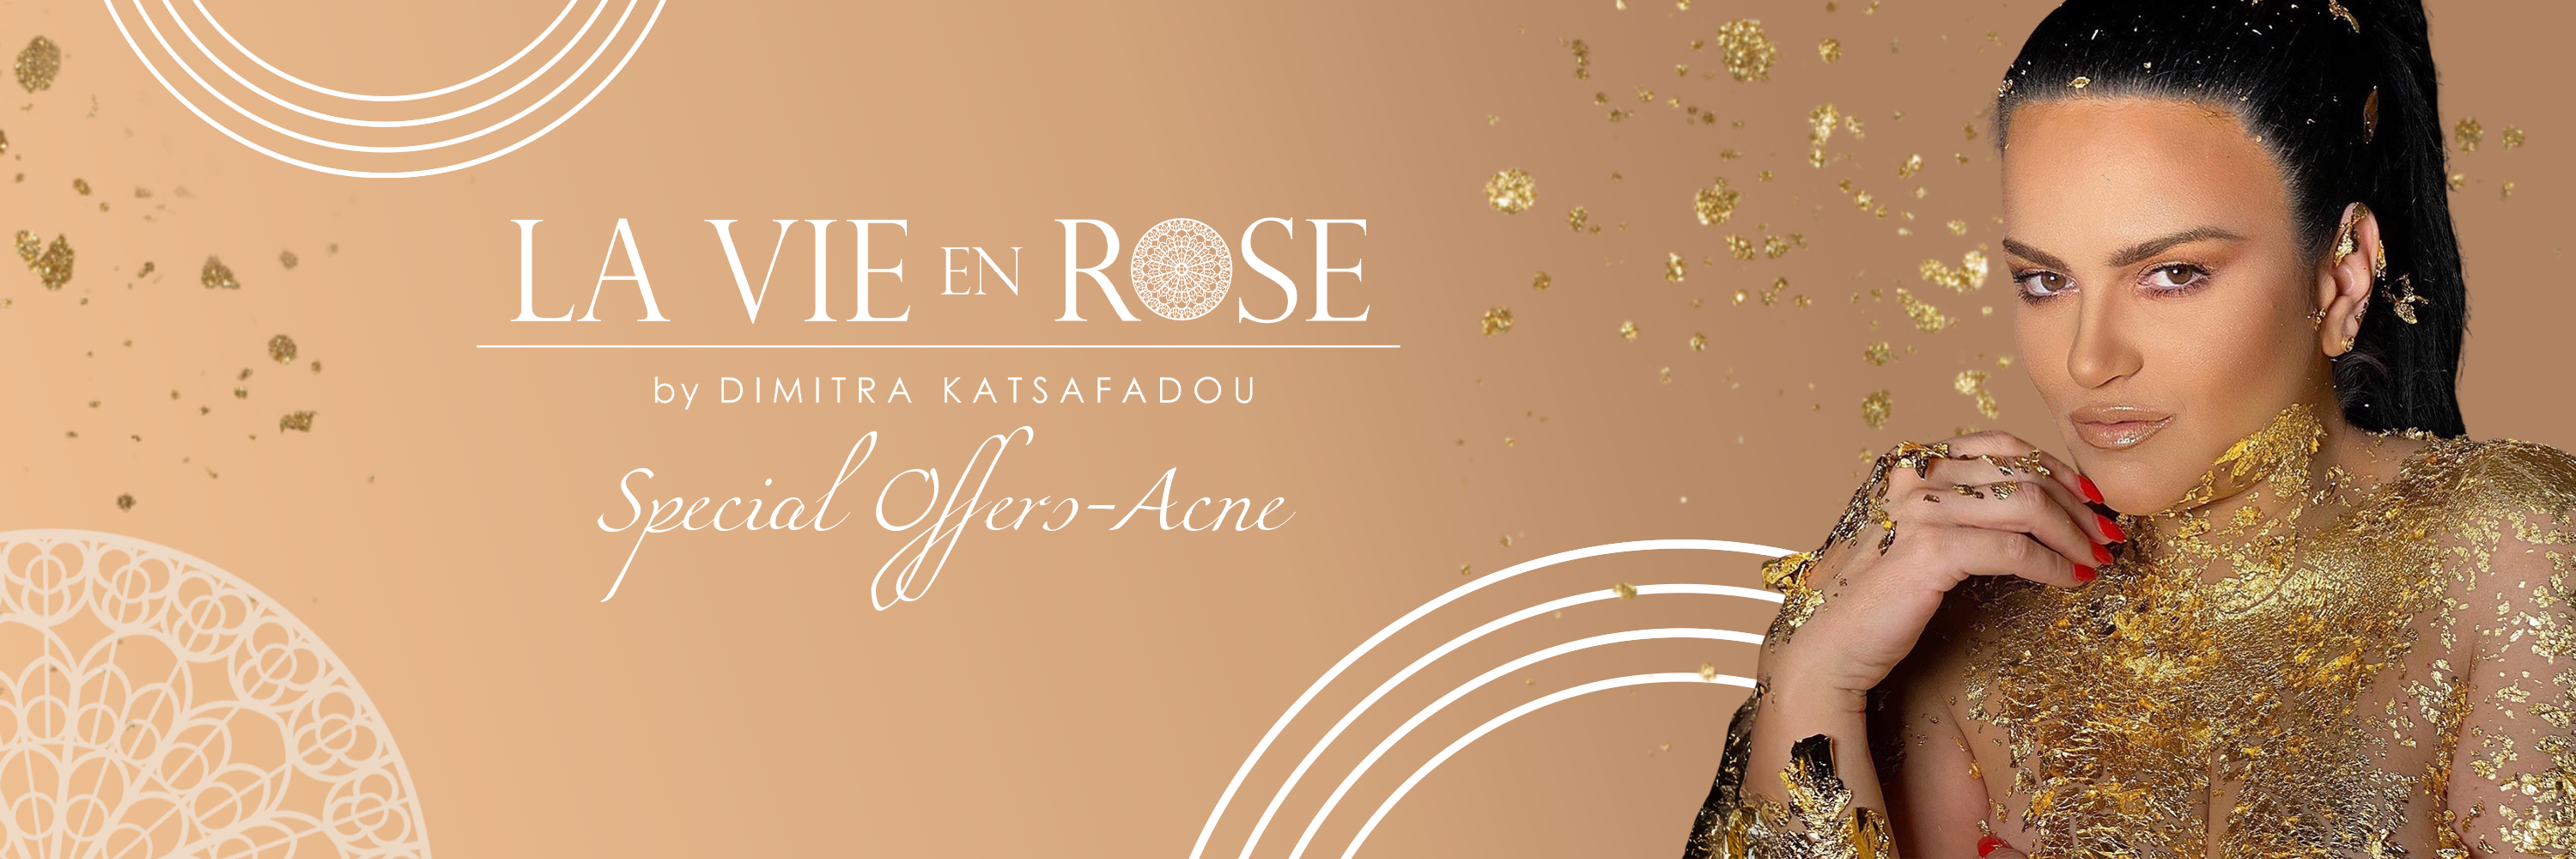 Special Offers - Acne La Vie en Rose